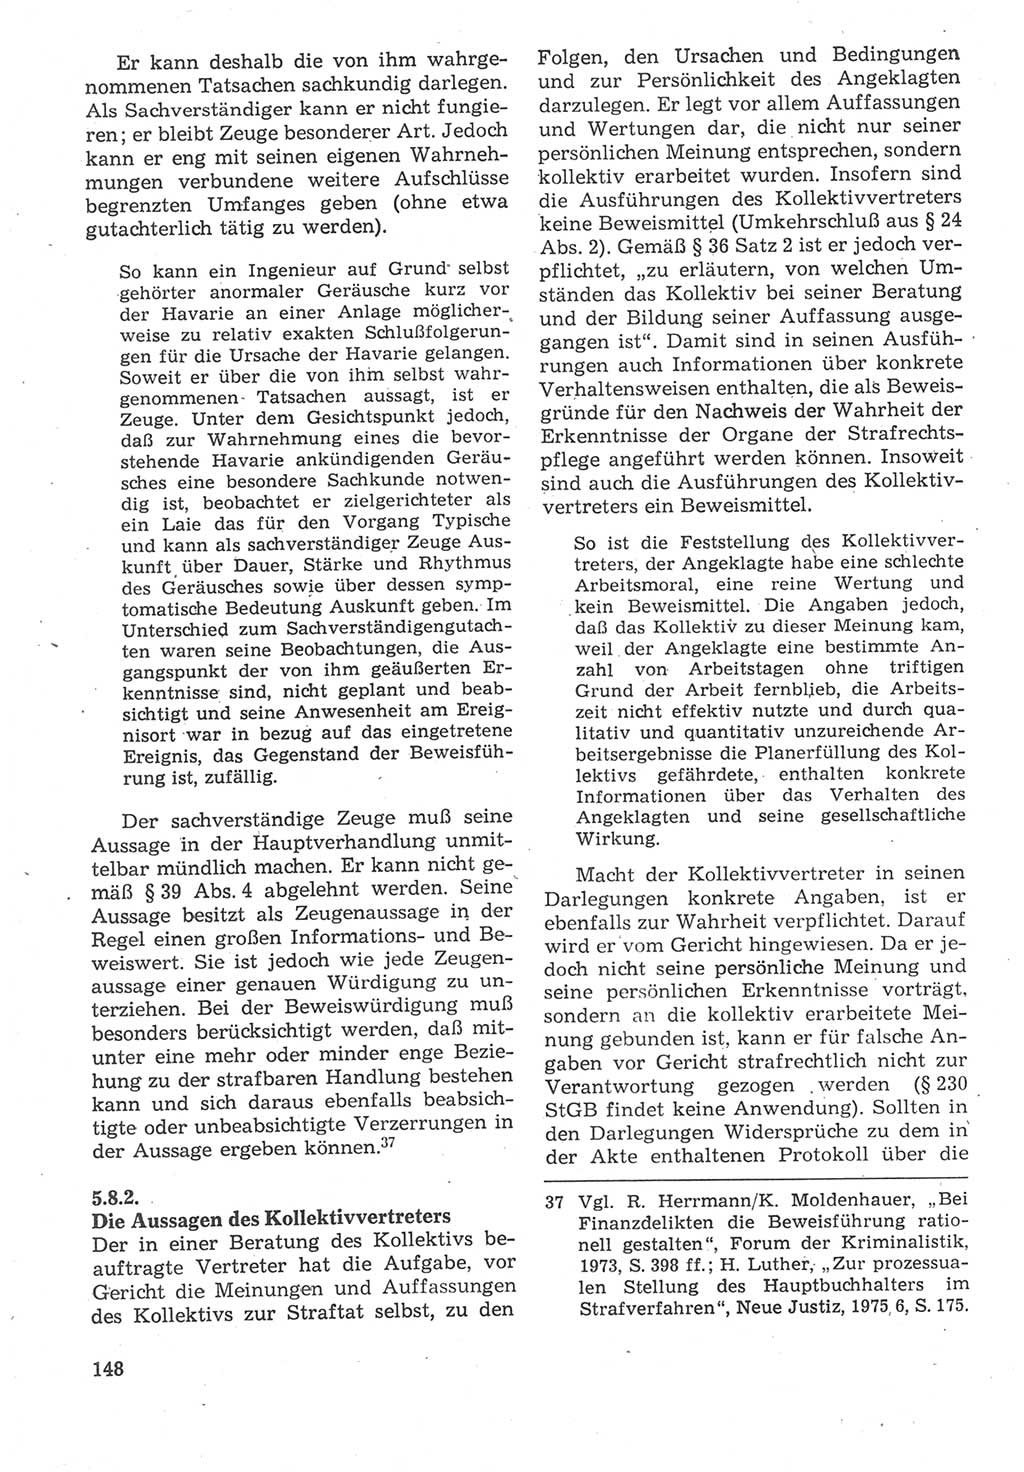 Strafverfahrensrecht [Deutsche Demokratische Republik (DDR)], Lehrbuch 1987, Seite 148 (Strafverf.-R. DDR Lb. 1987, S. 148)